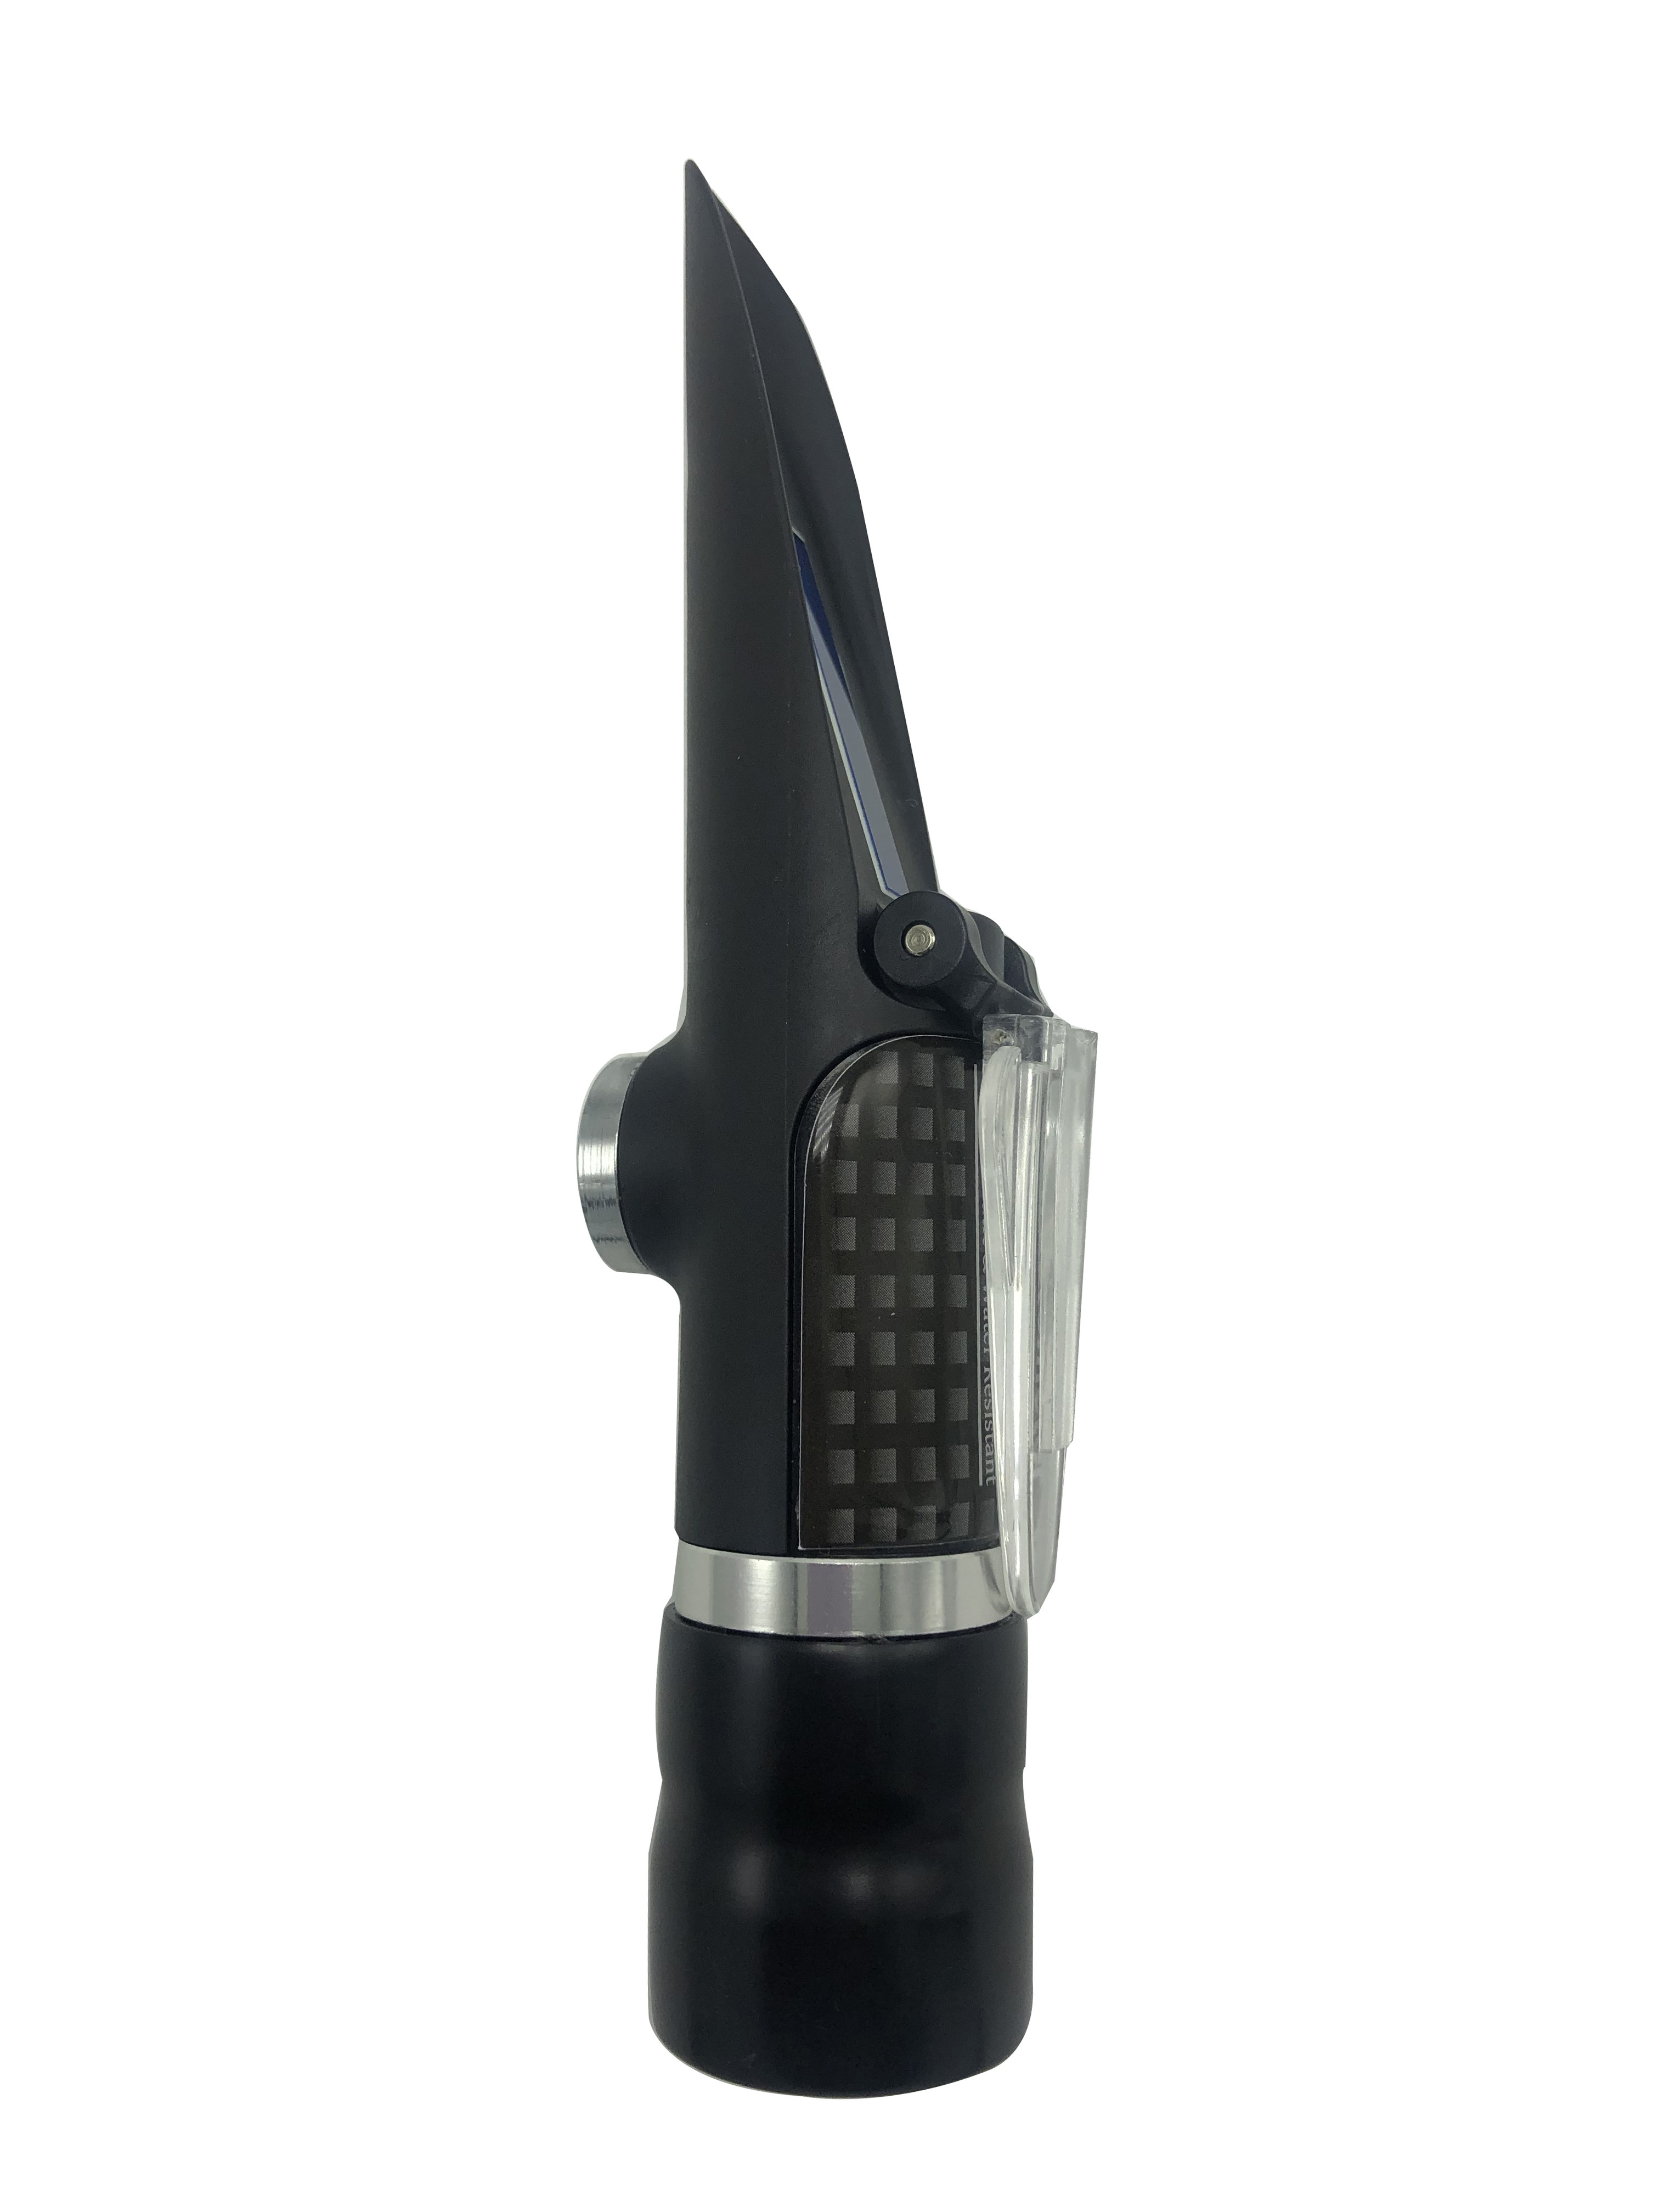 Brix Refractometer Range 0-20% of Waterproof Handheld Refractometer